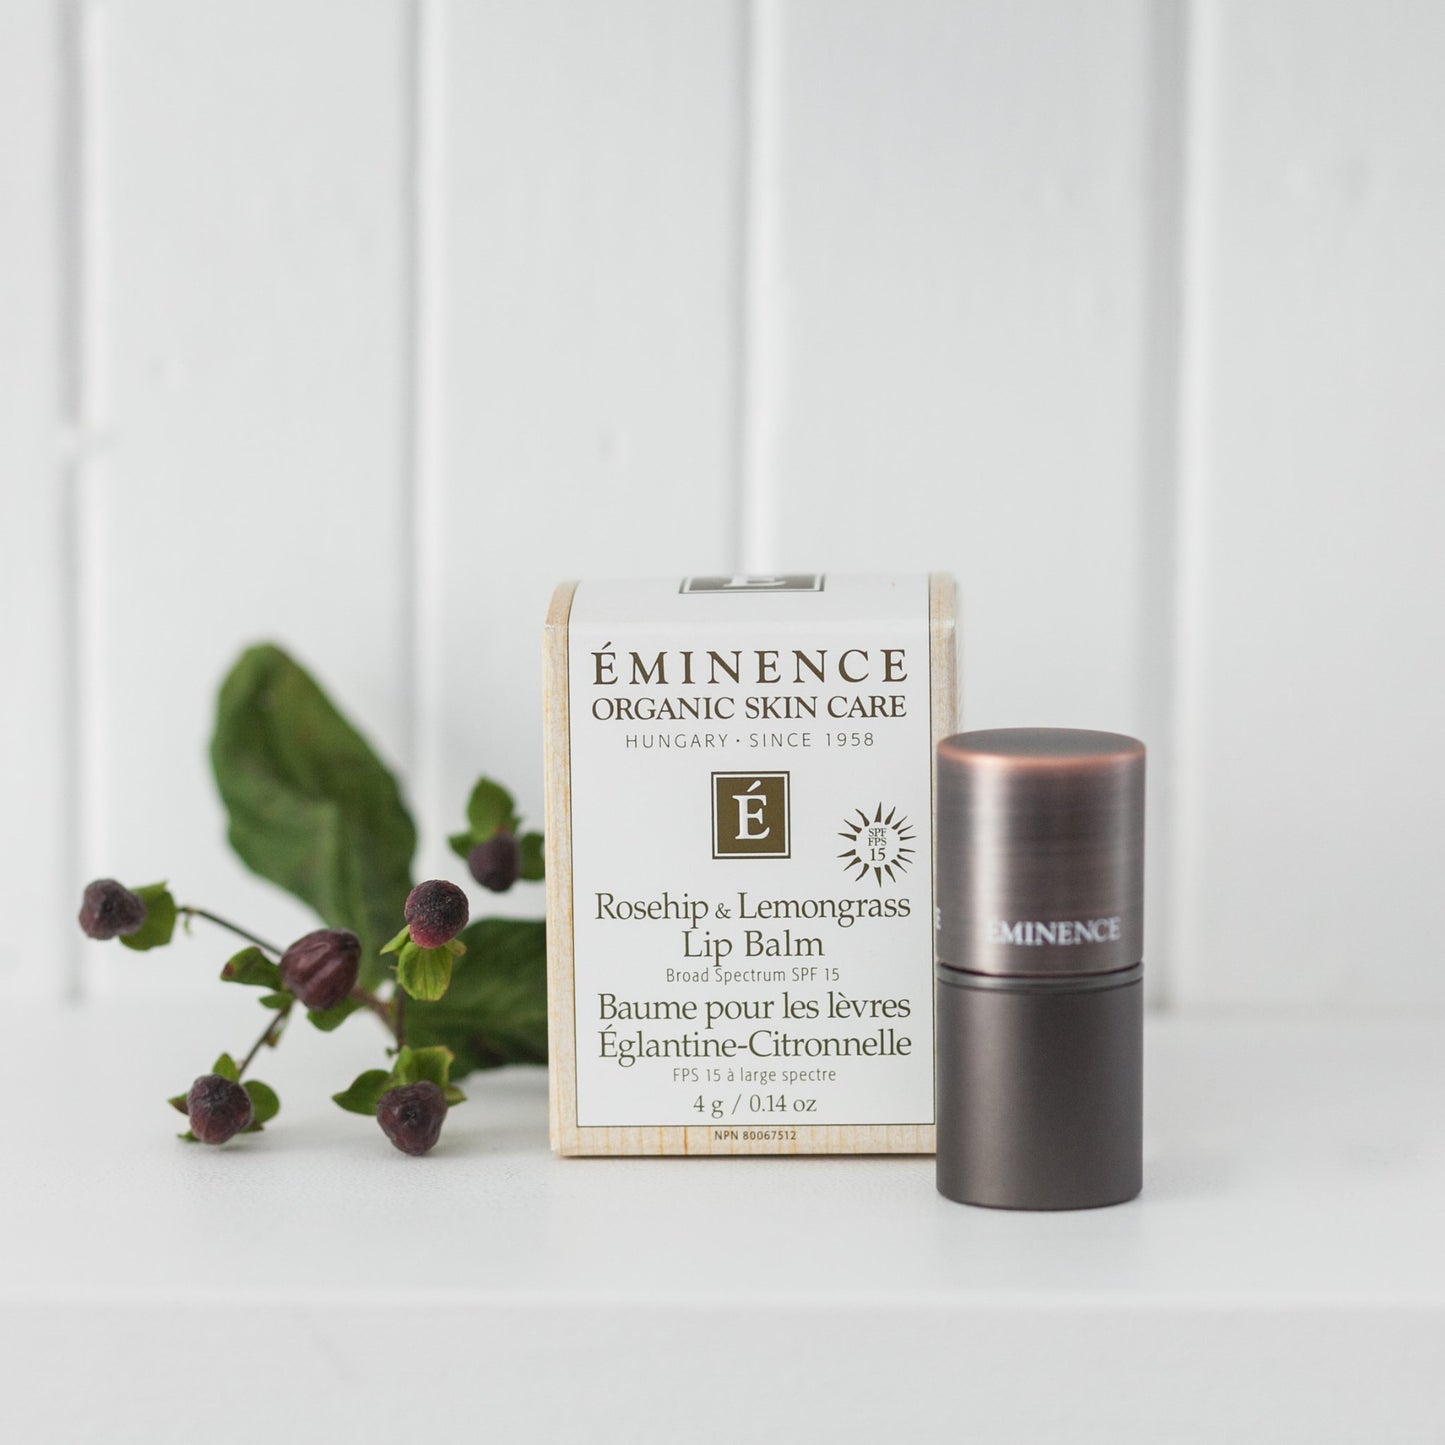 Eminence Organics - Eminence Rosehip & Lemongrass Lip Balm SPF 15 - ORESTA clean beauty simplified